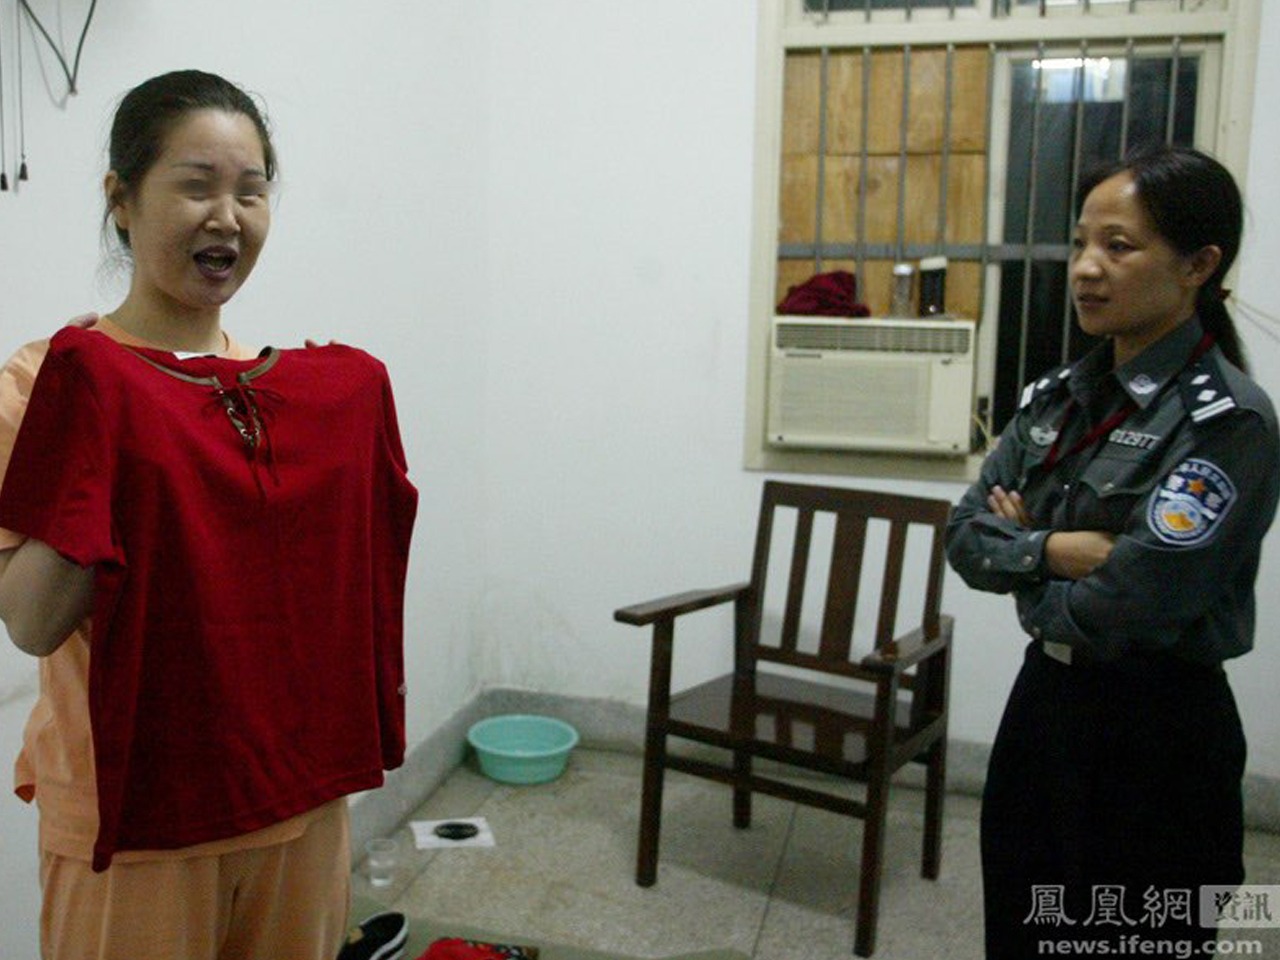 фото девушки перед расстрелом китай